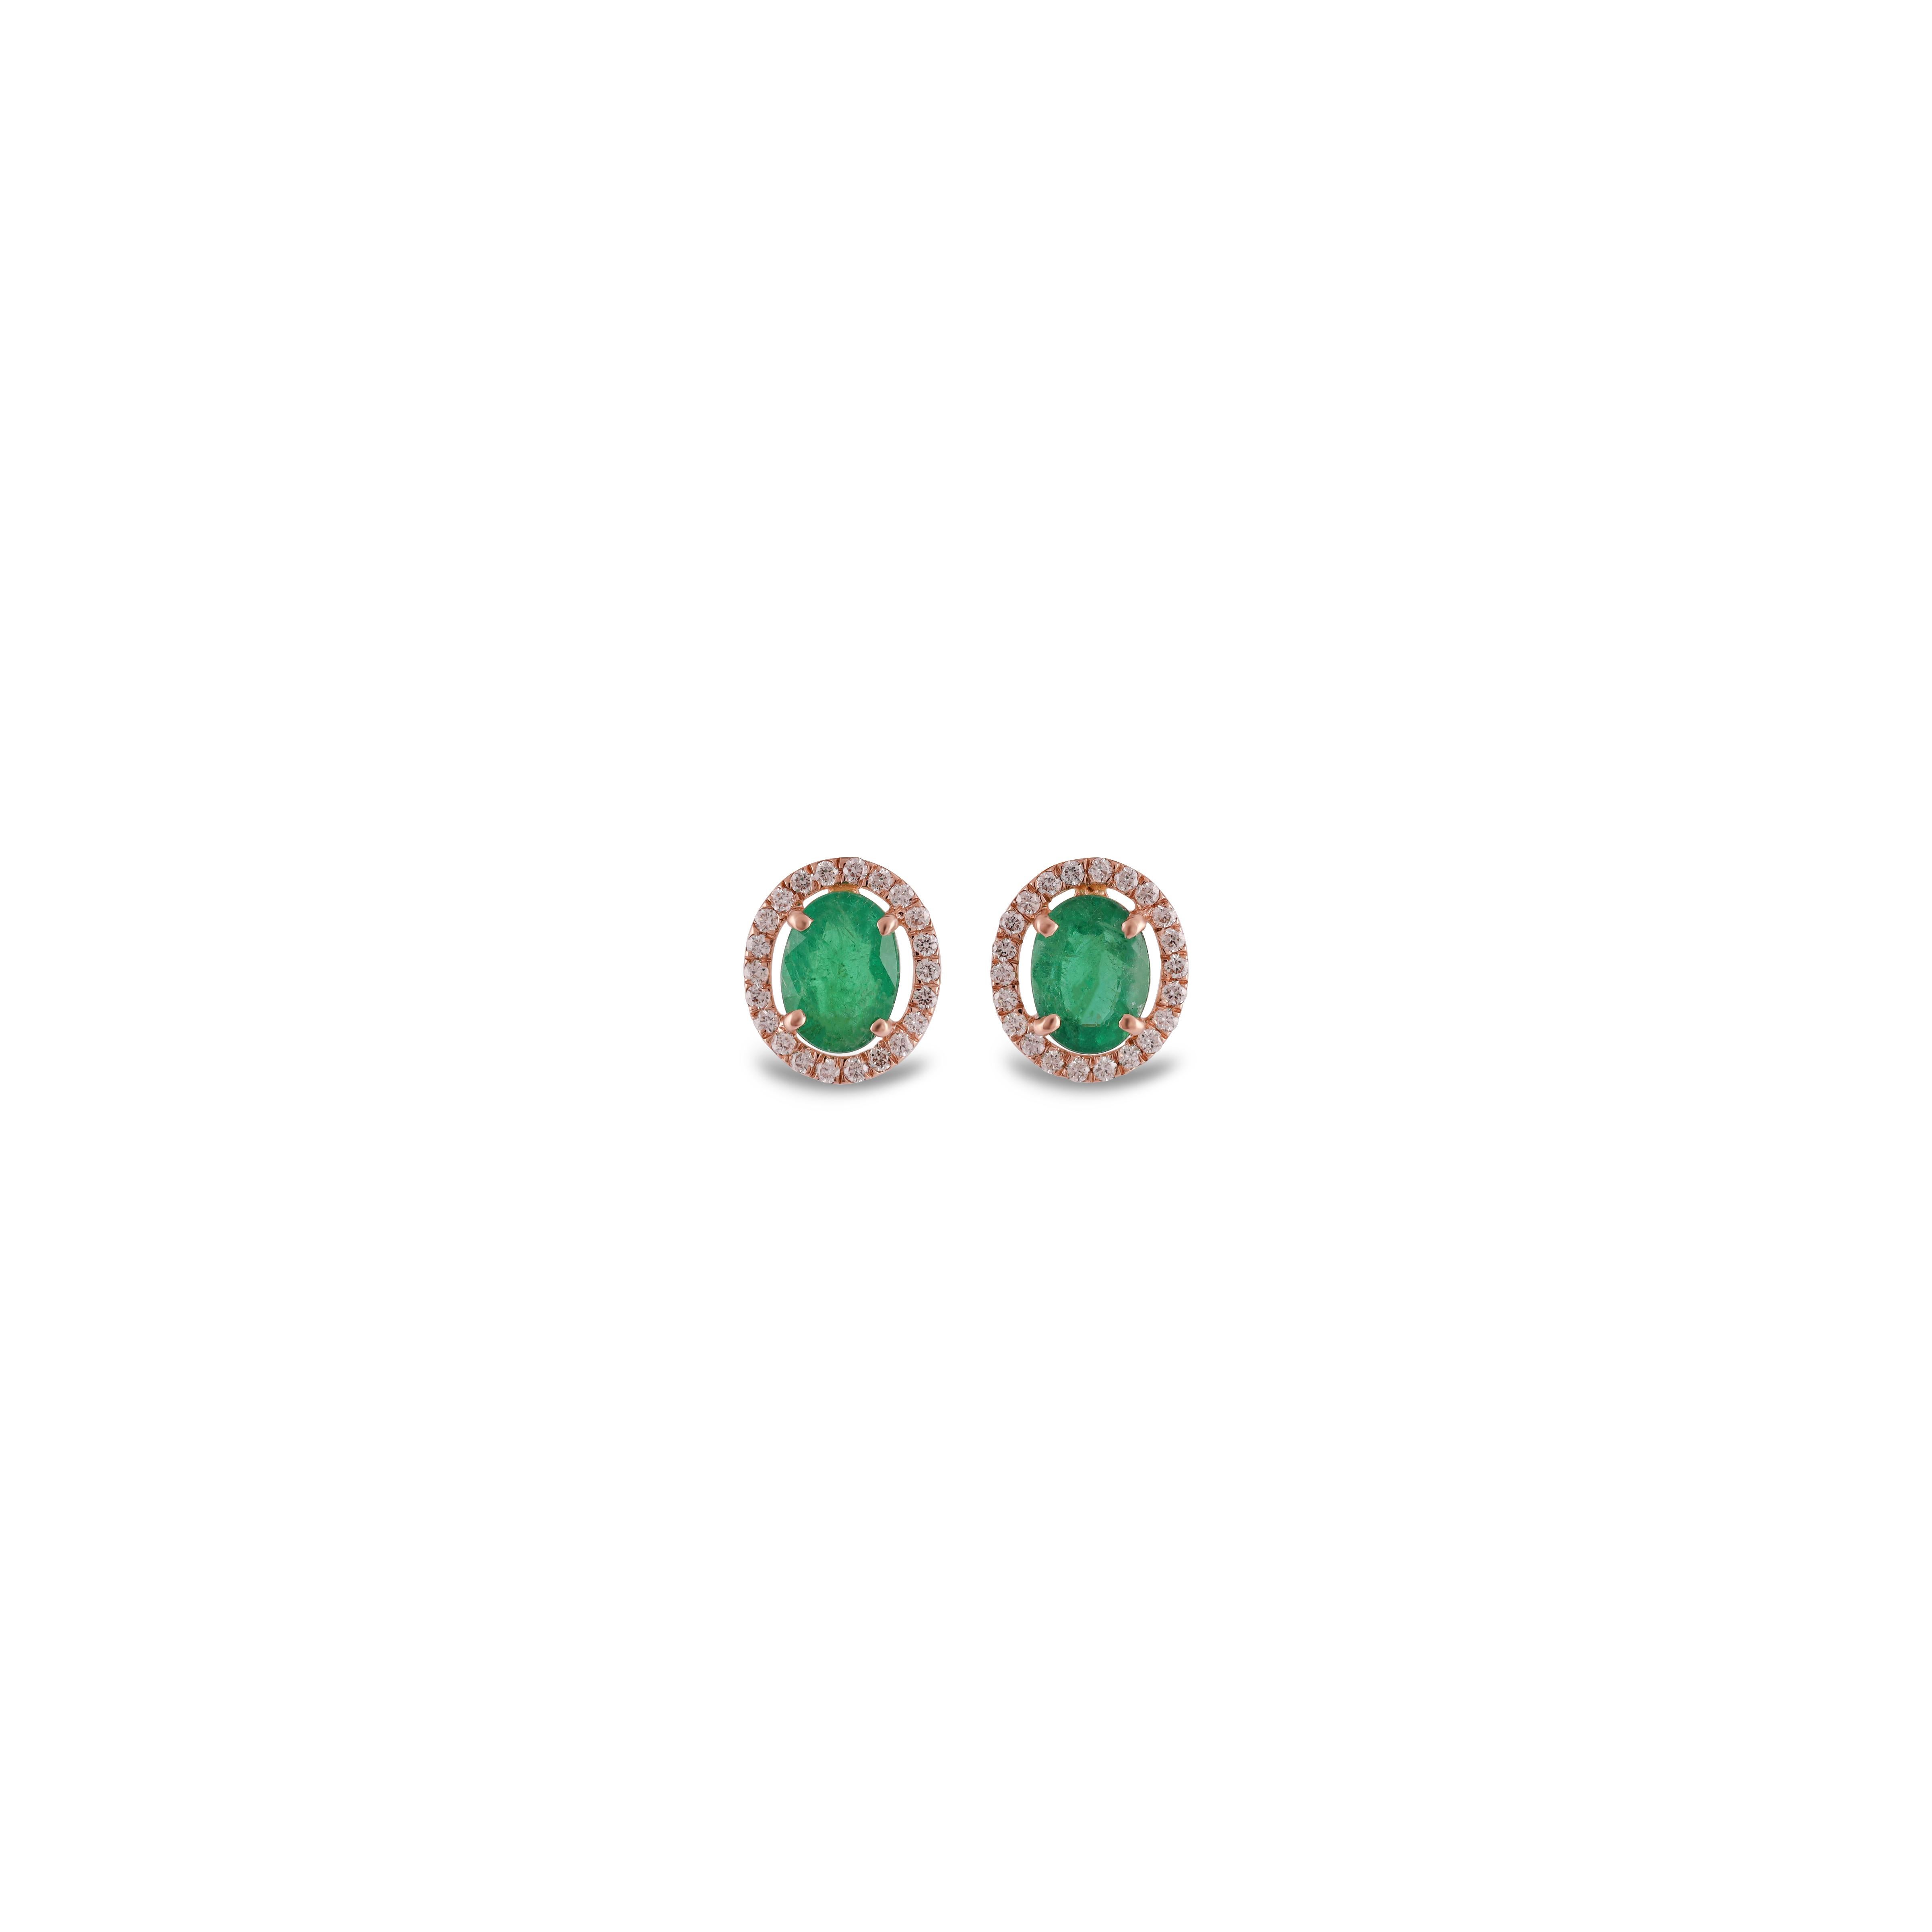 Eleganter Smaragd  Ohrstecker, die man gerne trägt. Ein klassisches Paar Ohrringe mit einem Designer-Touch mit seinem Cluster  Fassung aus 18 Karat Roségold, die ihm einen echten Fun-Look verleiht.

2,07 Karat Smaragd  Ohrstecker aus 18 Karat